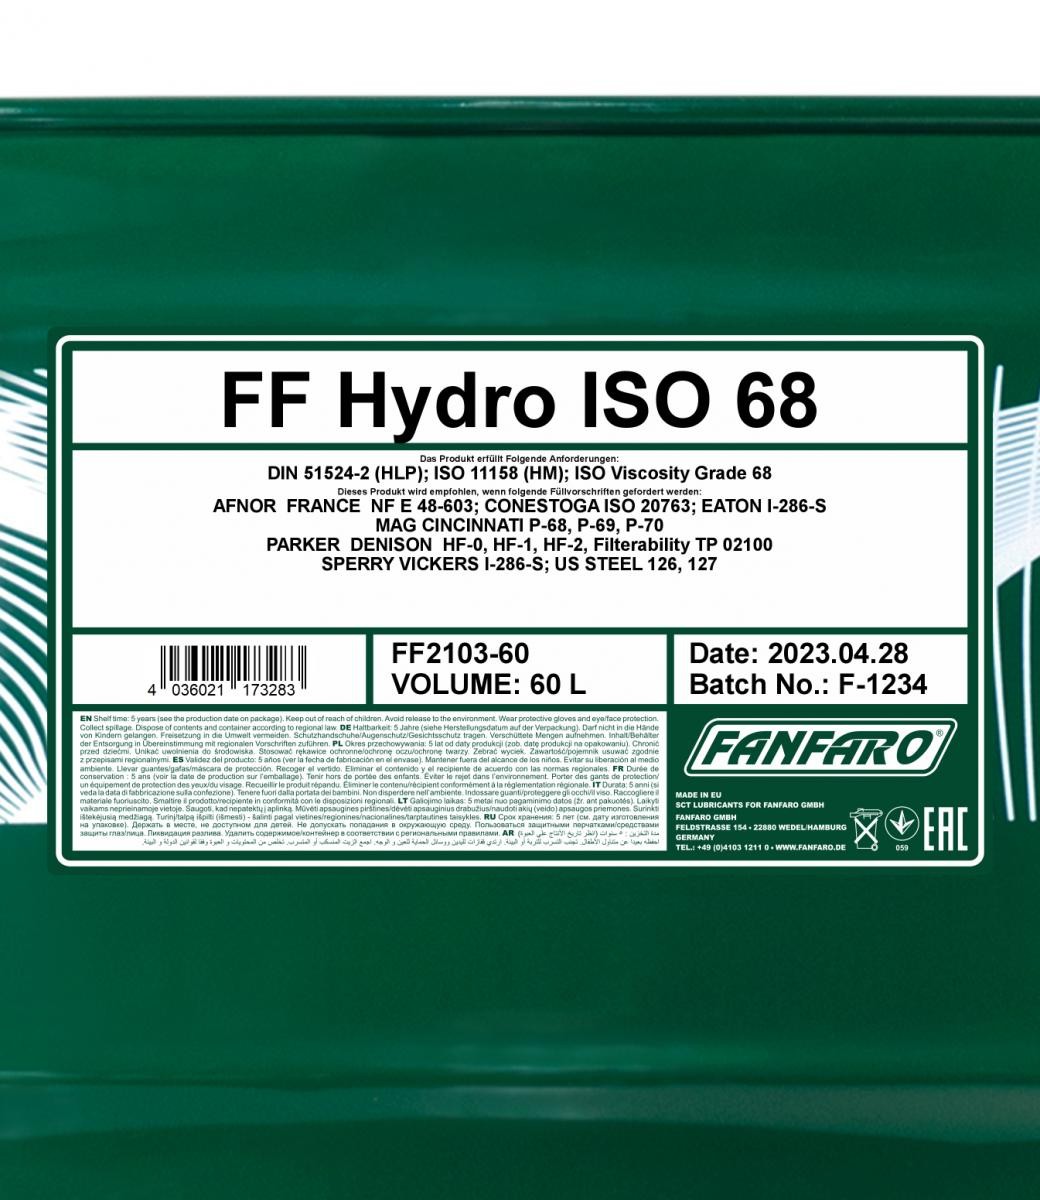 FANFARO Hydraulic fluid FF2103-60